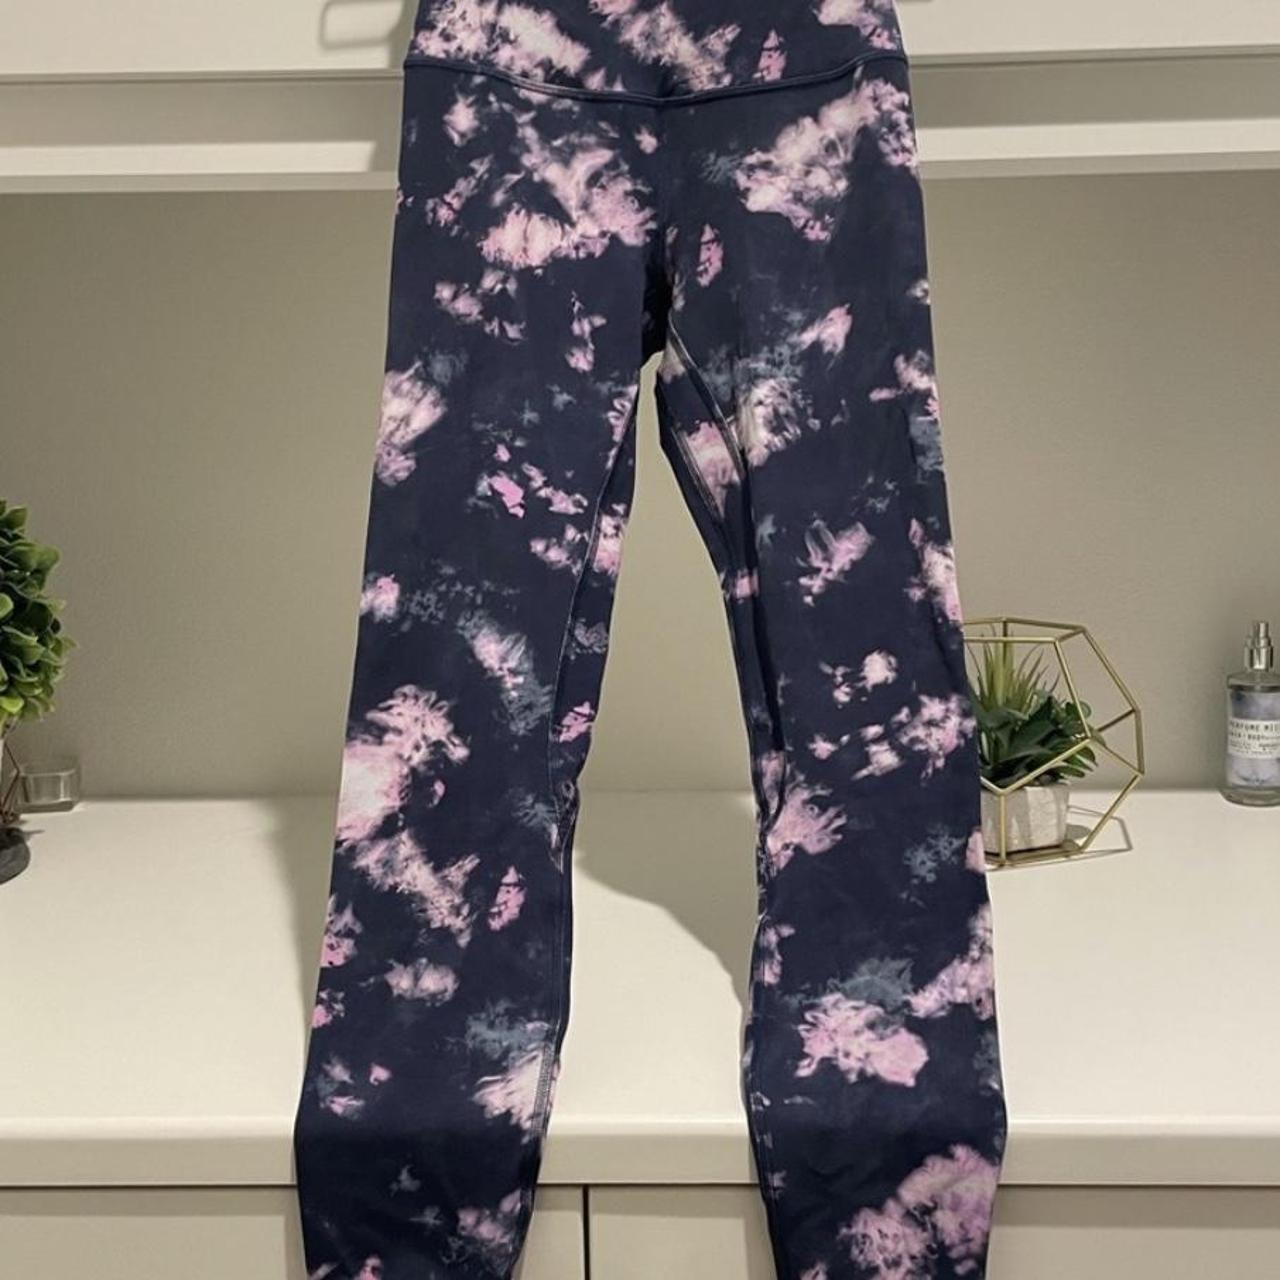 Never worn tie dye lululemon align legging size 4